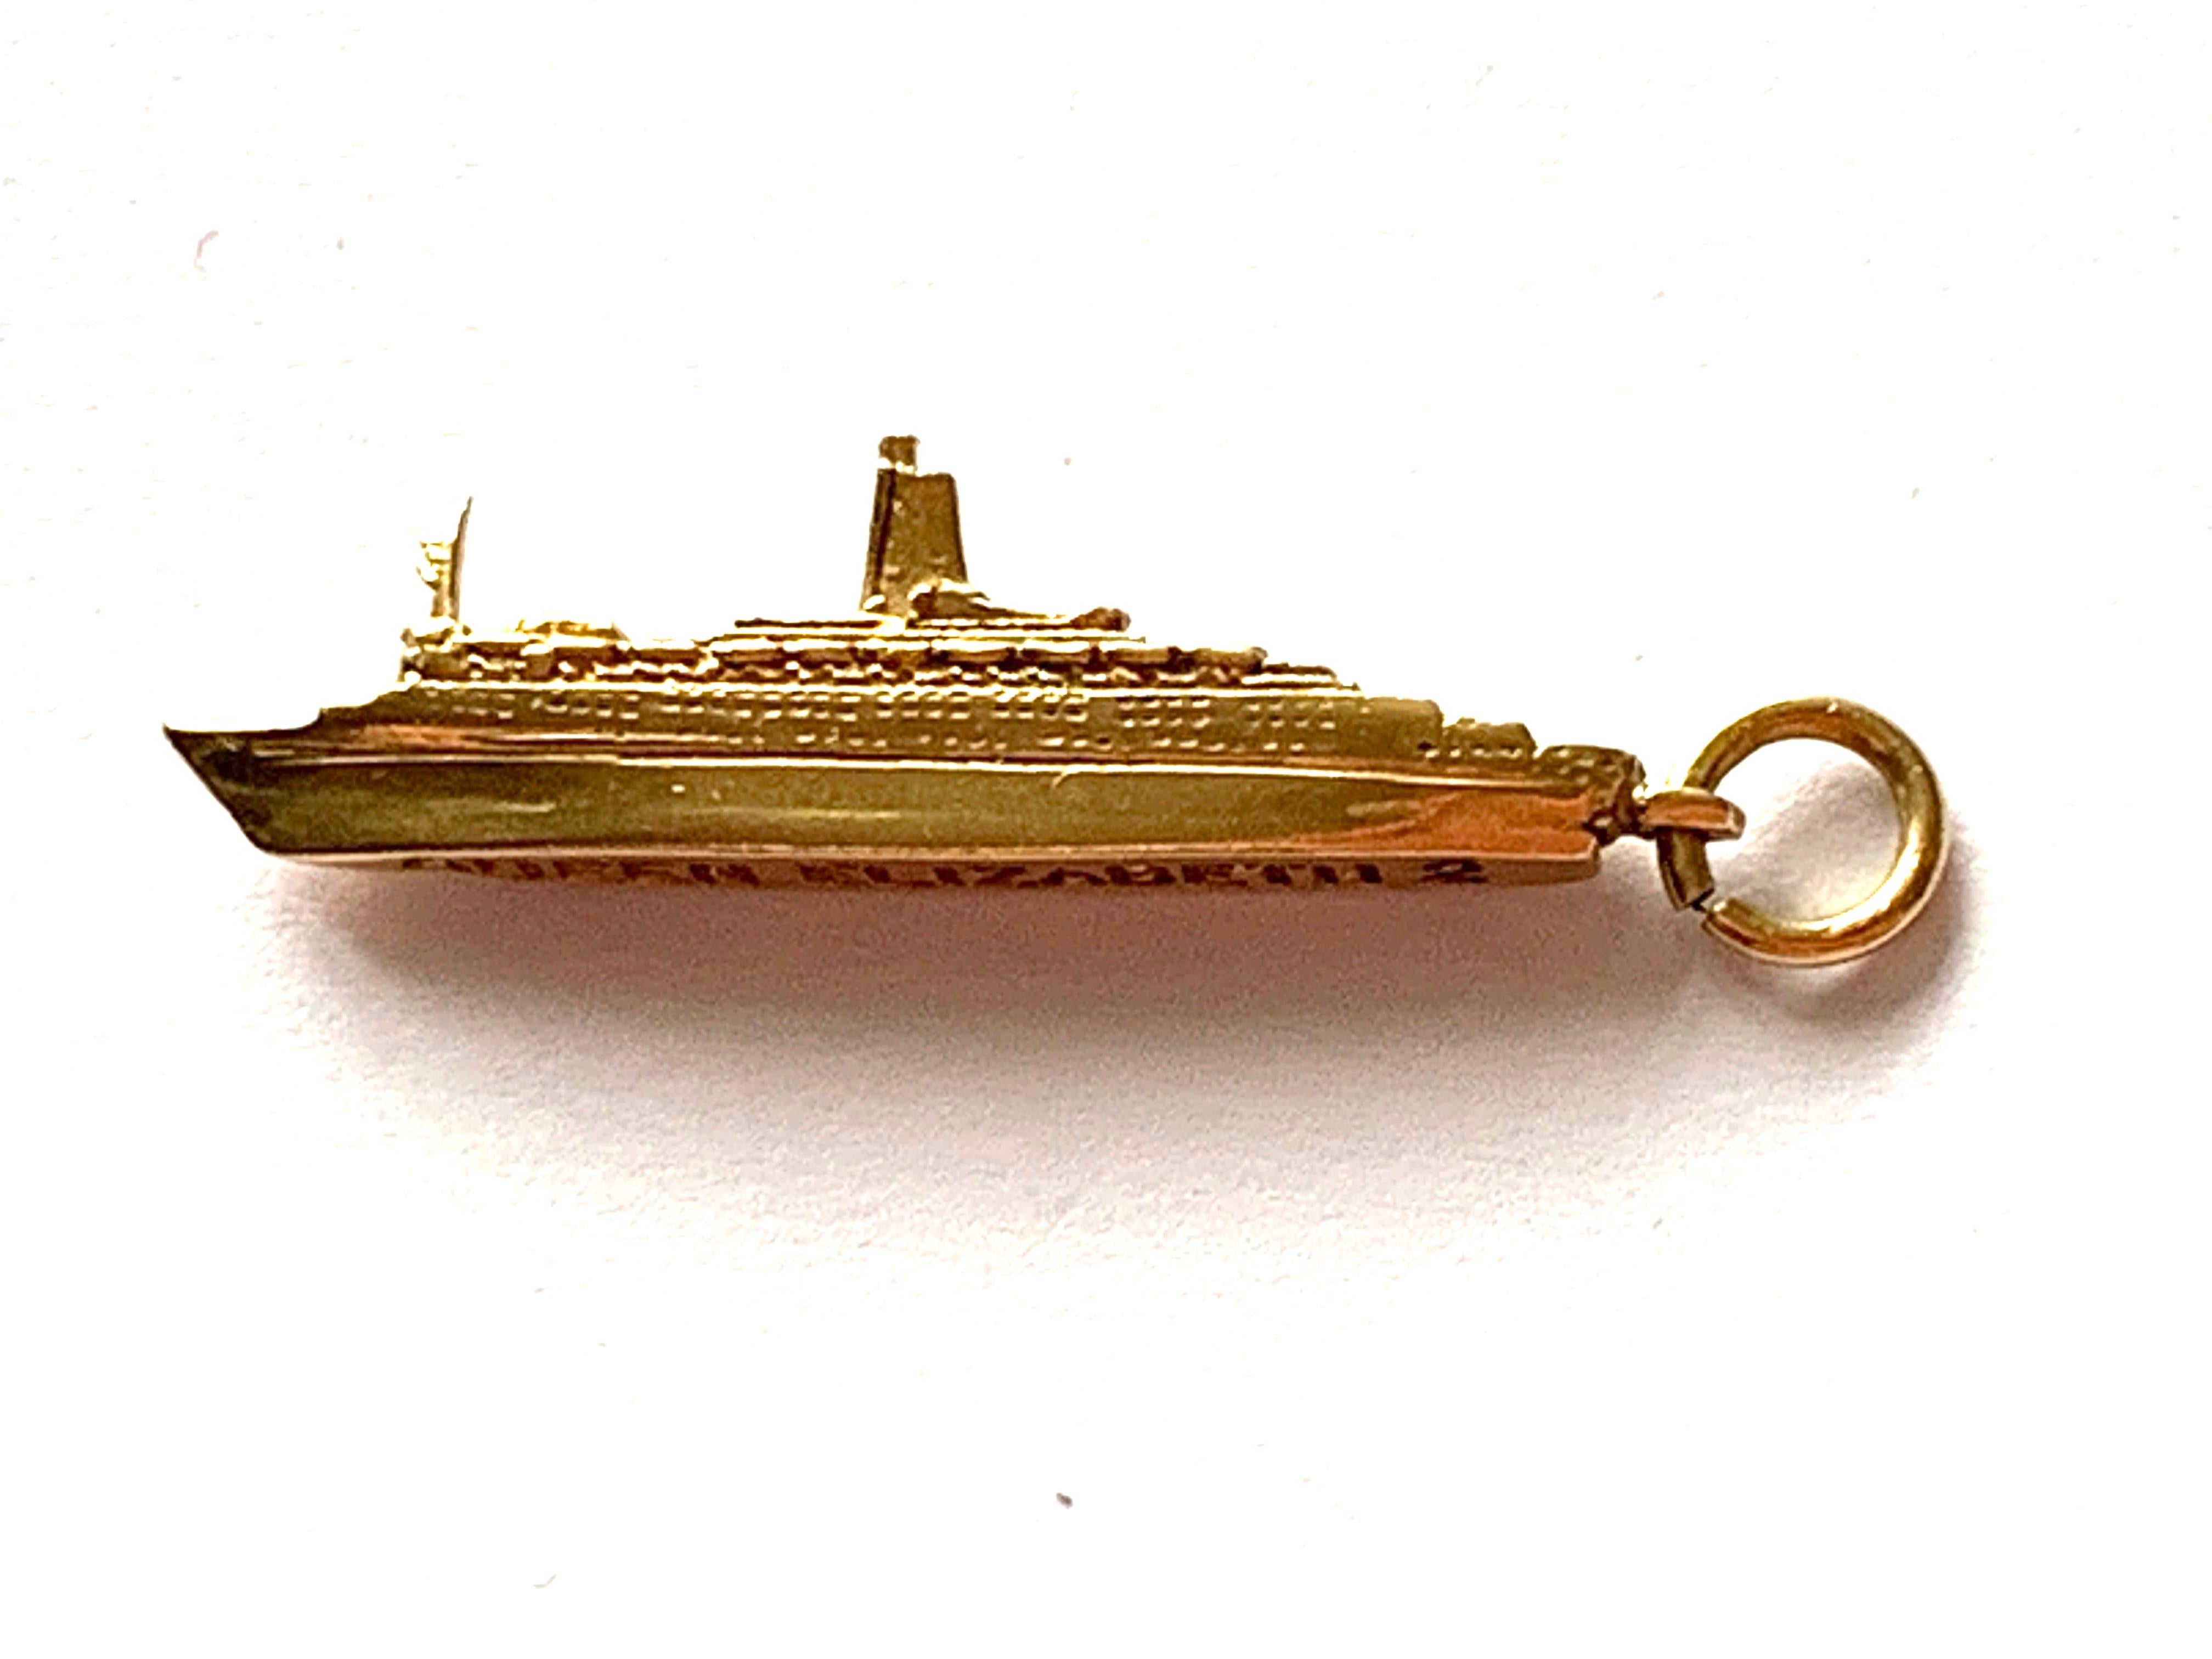 Pendentif en or 9ct pour navire Queen Elizabeth 11
Poinçonné  BAO (Birmingham assay offices)
Poids 2,6 grammes
Longueur 3,5 cm (y compris l'anneau)
Largeur 6mm